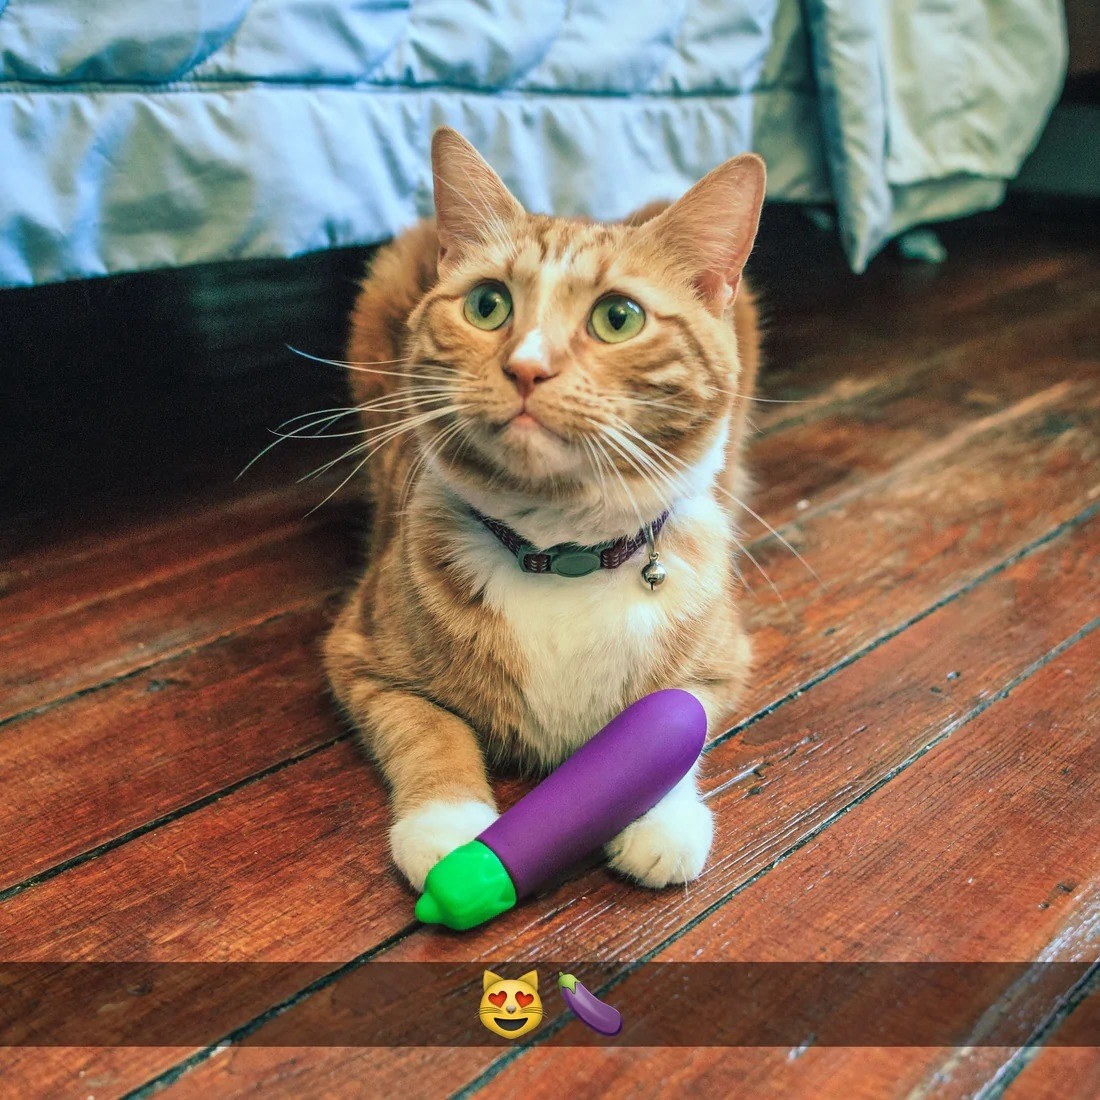 Cat with purple eggplant emoji vibrator